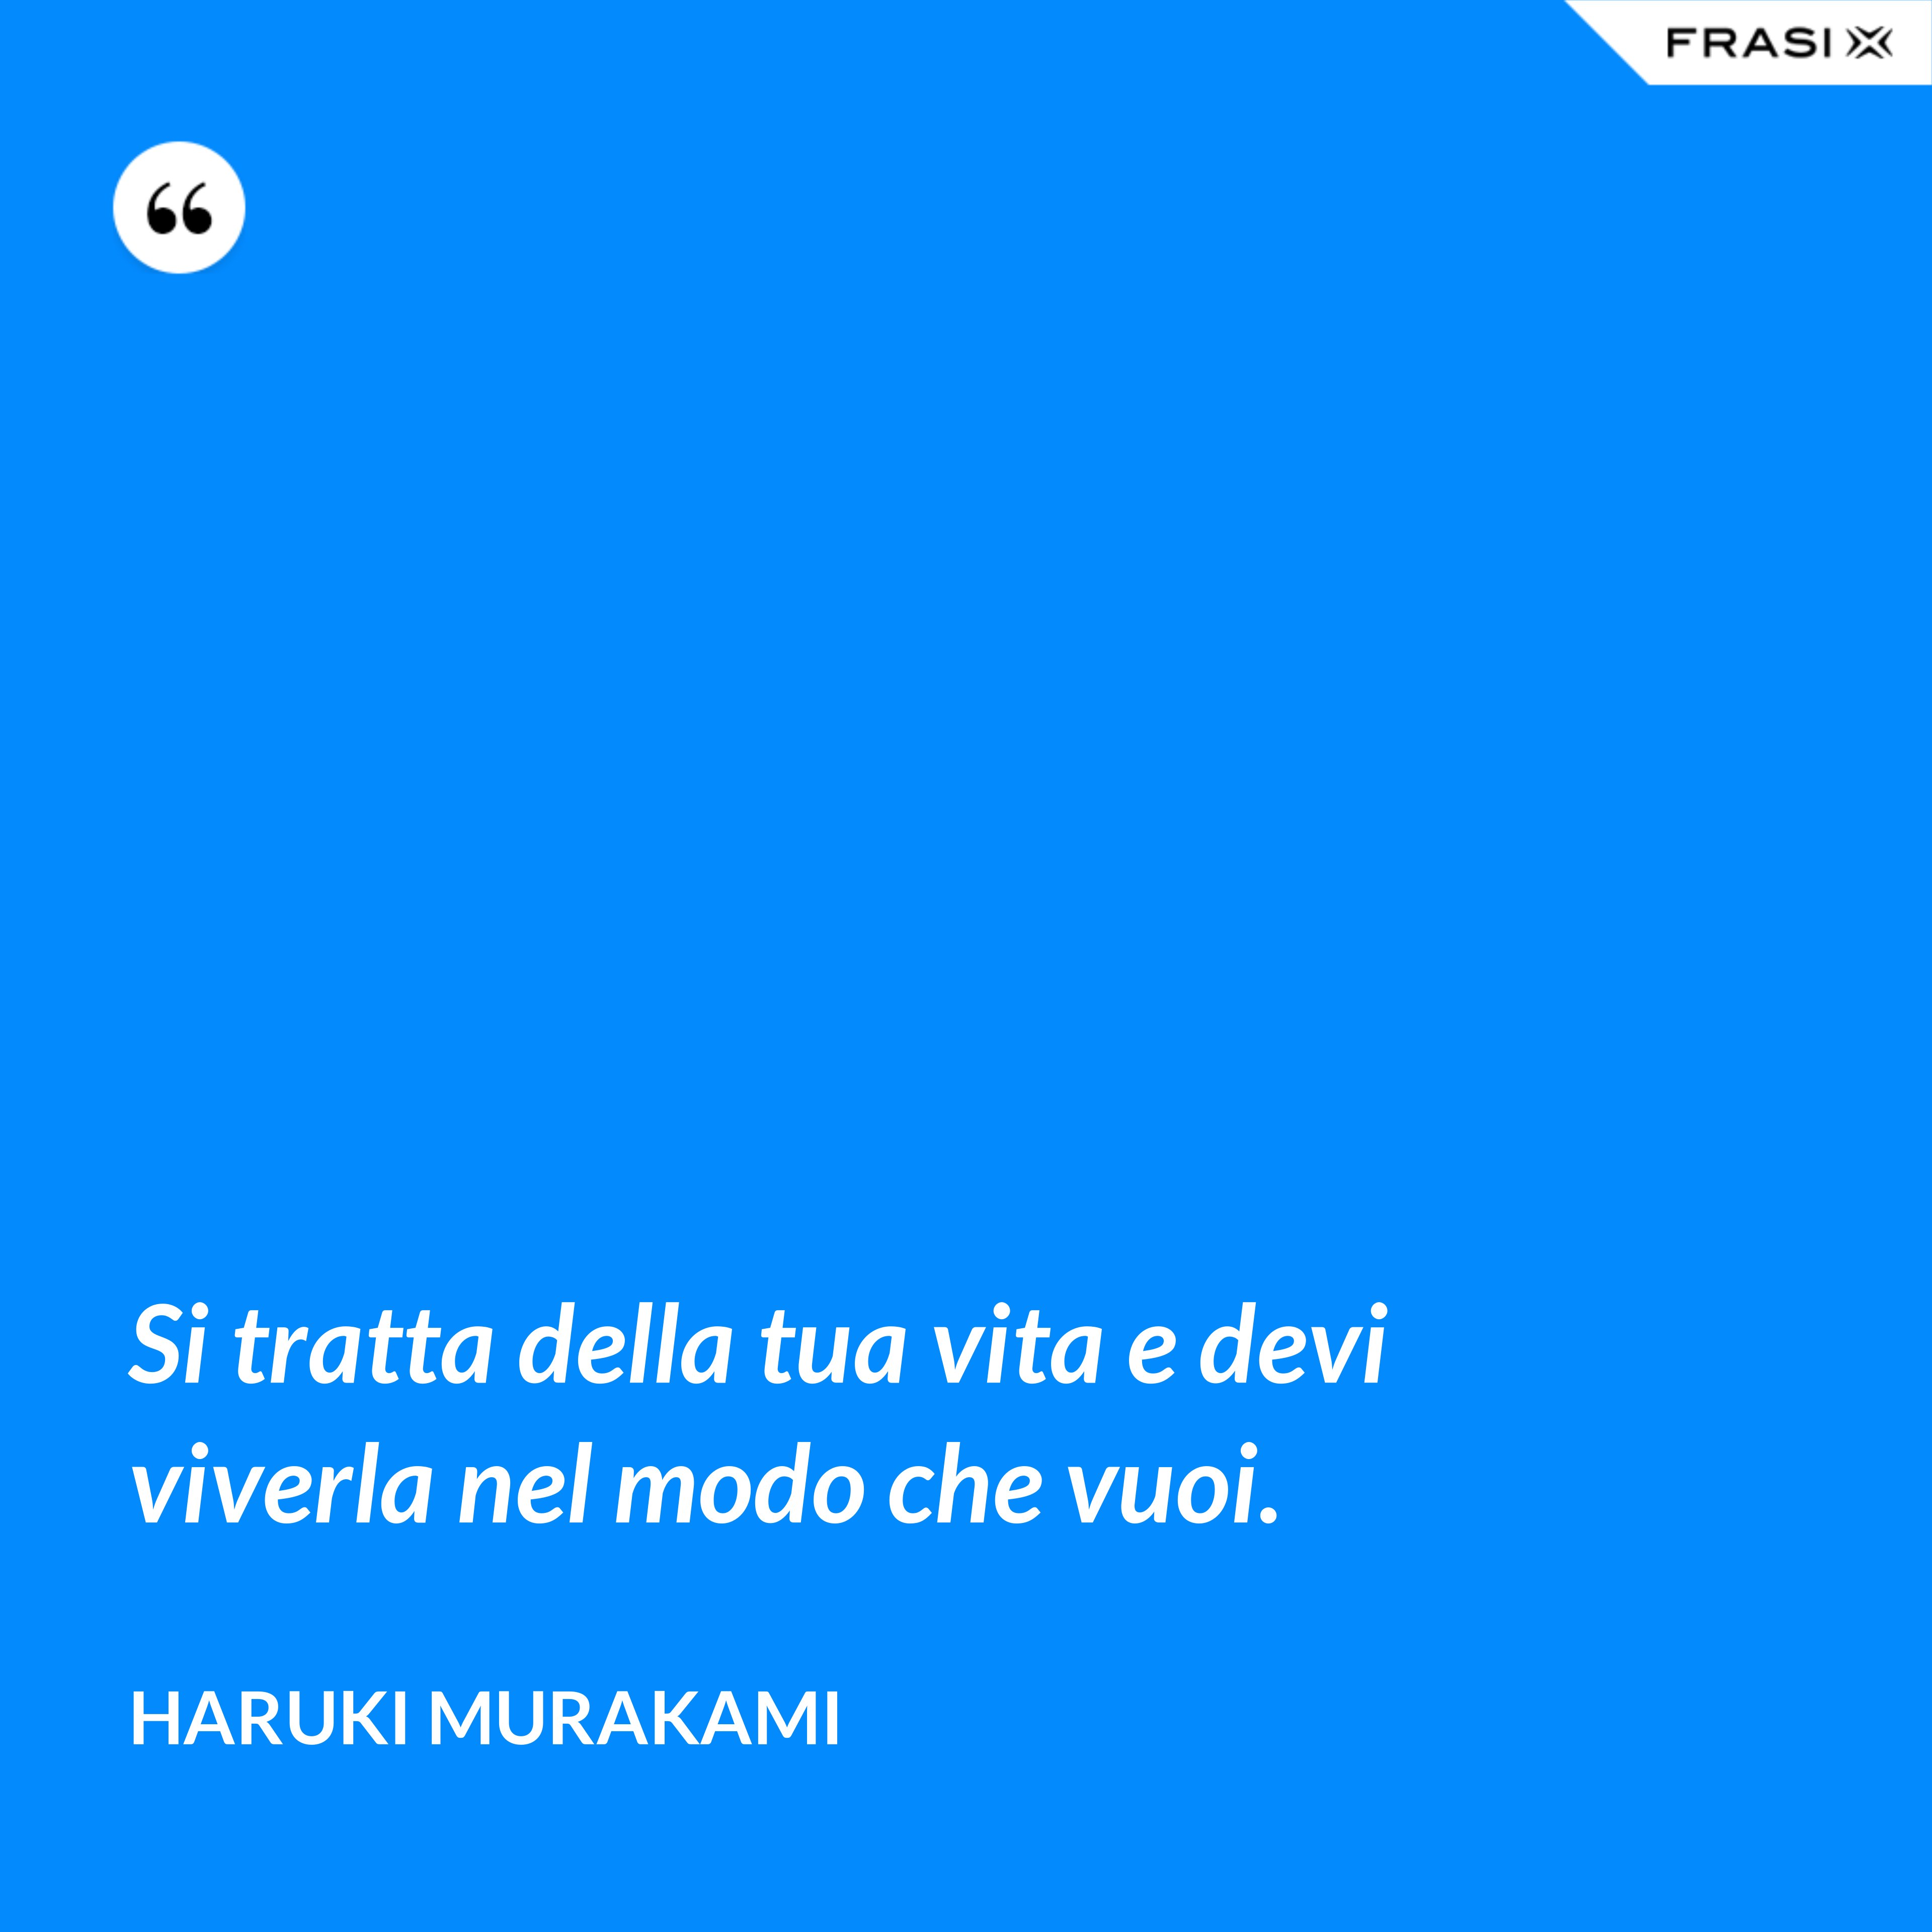 Si tratta della tua vita e devi viverla nel modo che vuoi. - Haruki Murakami